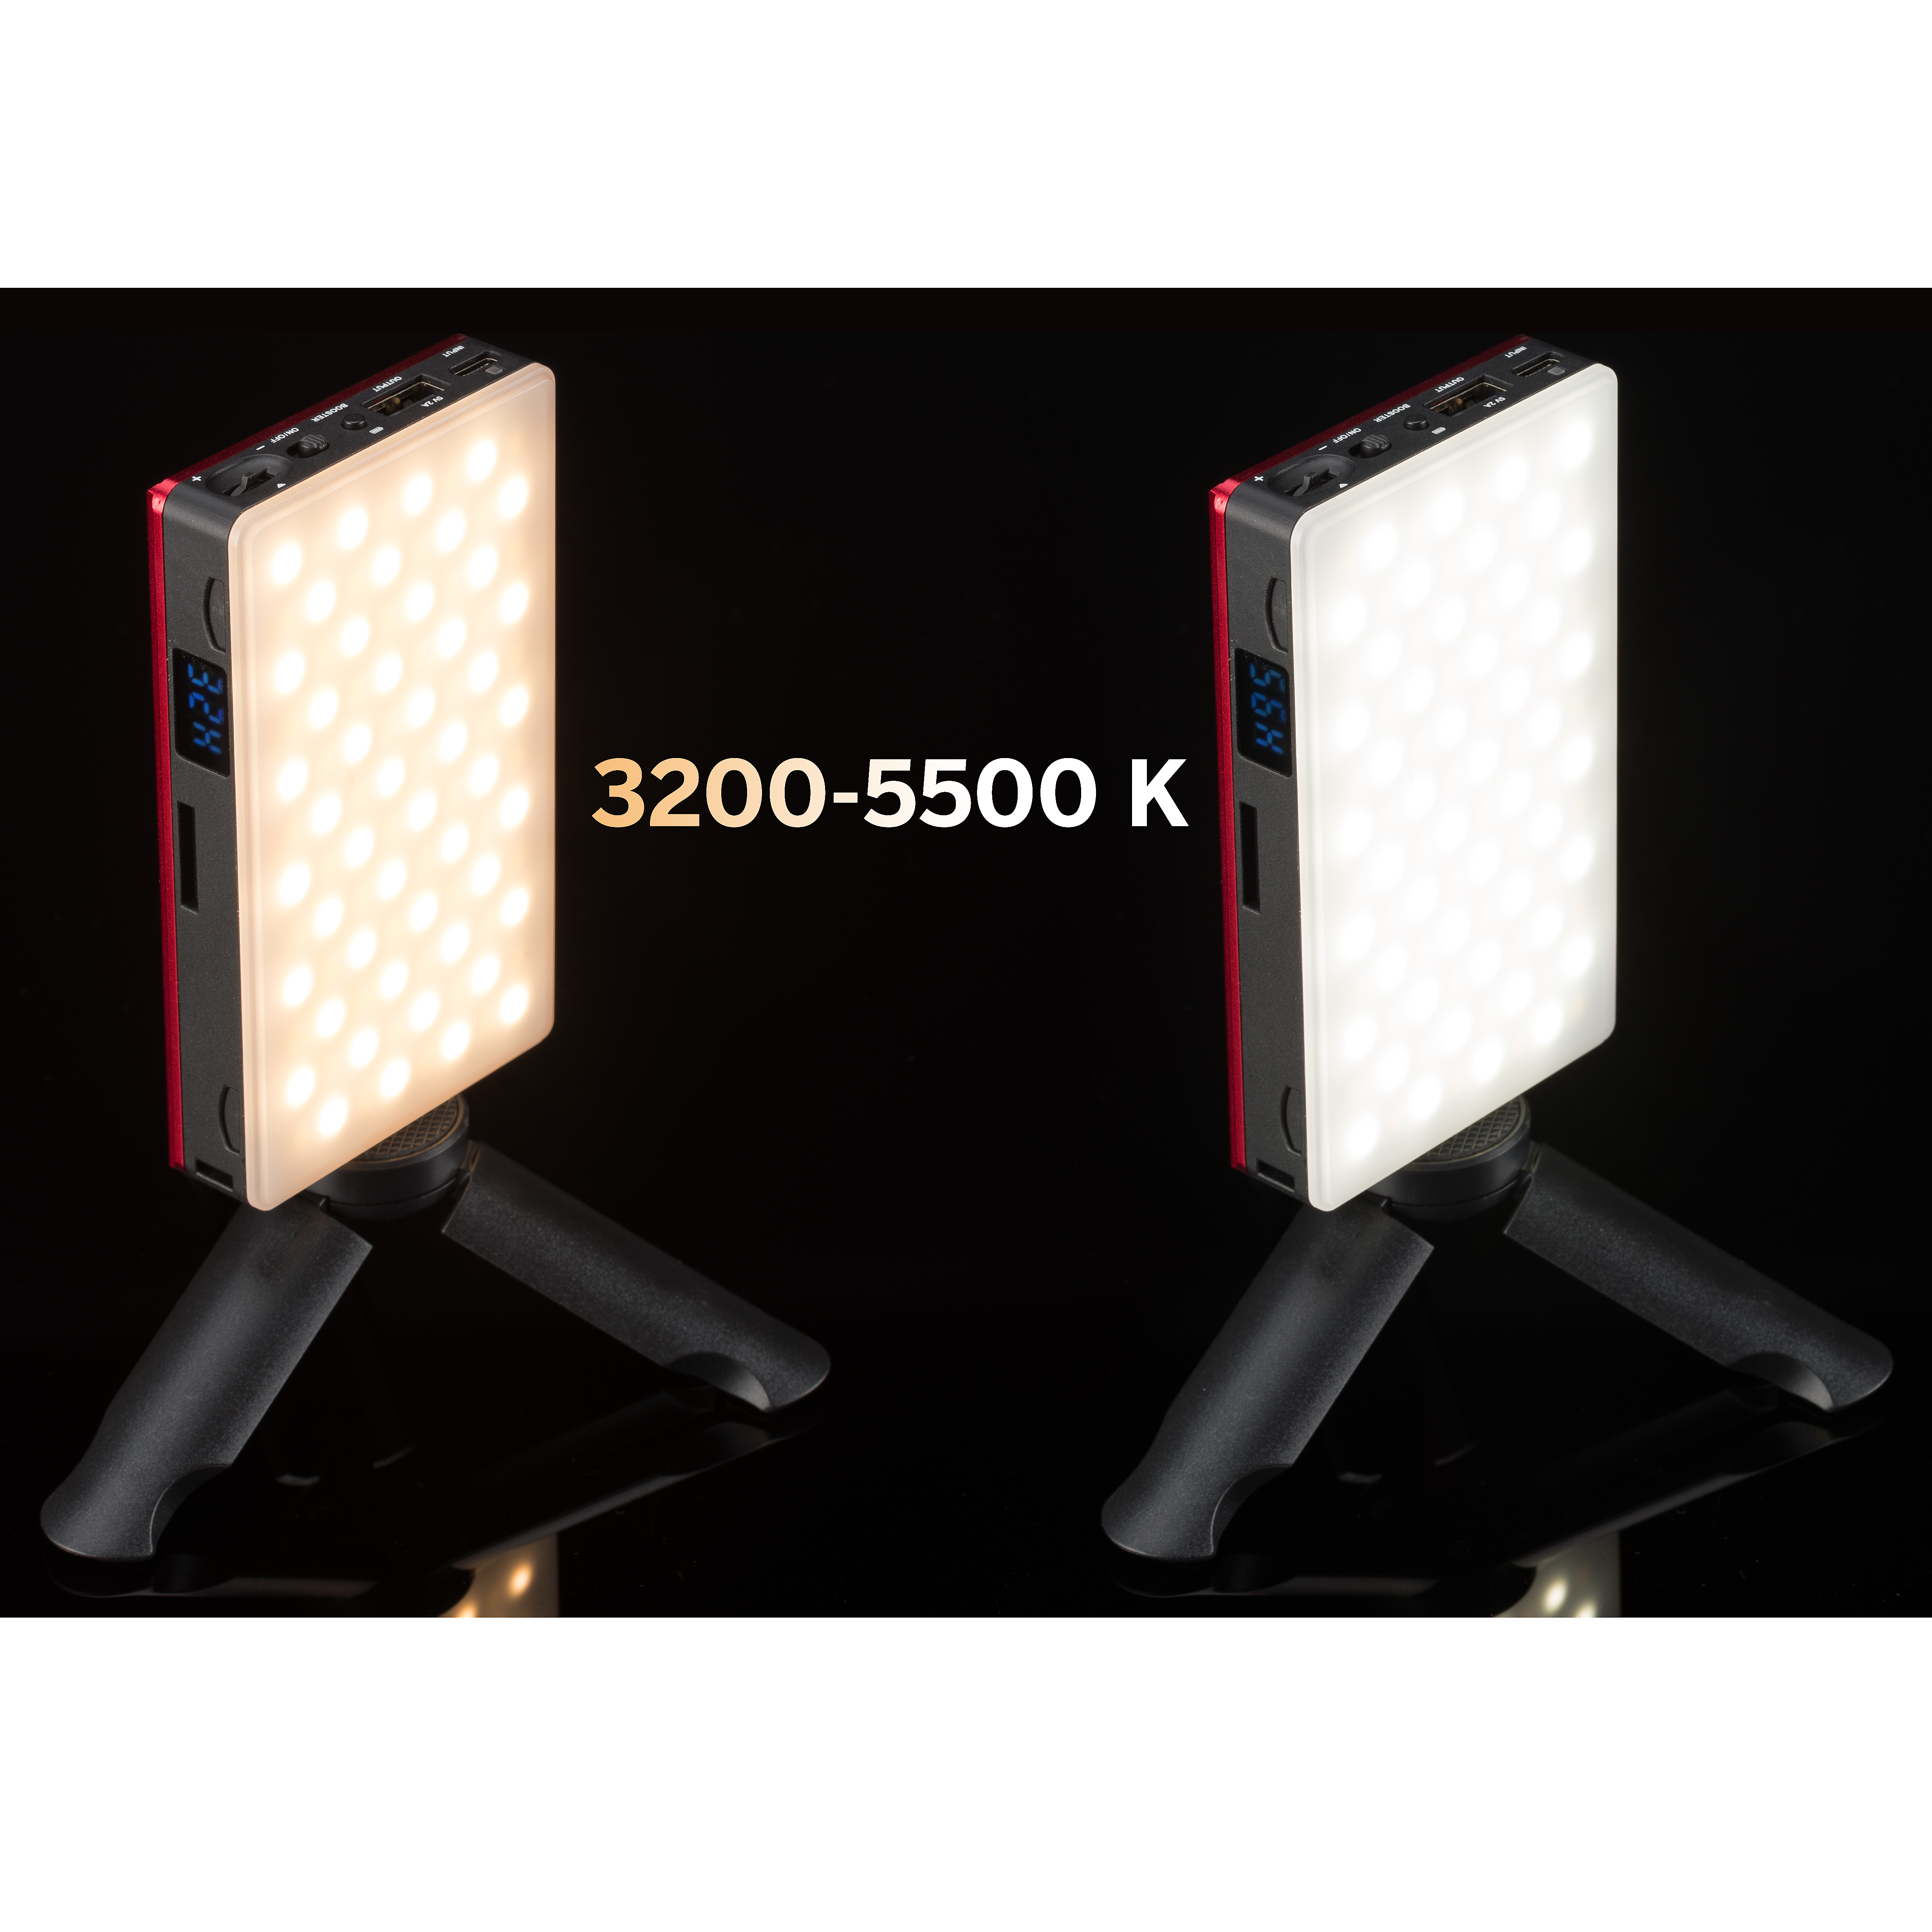 BRESSER Pocket LED 9W Bi-Color Dauerlicht für den mobilen Einsatz und Smartphone-Fotografie 